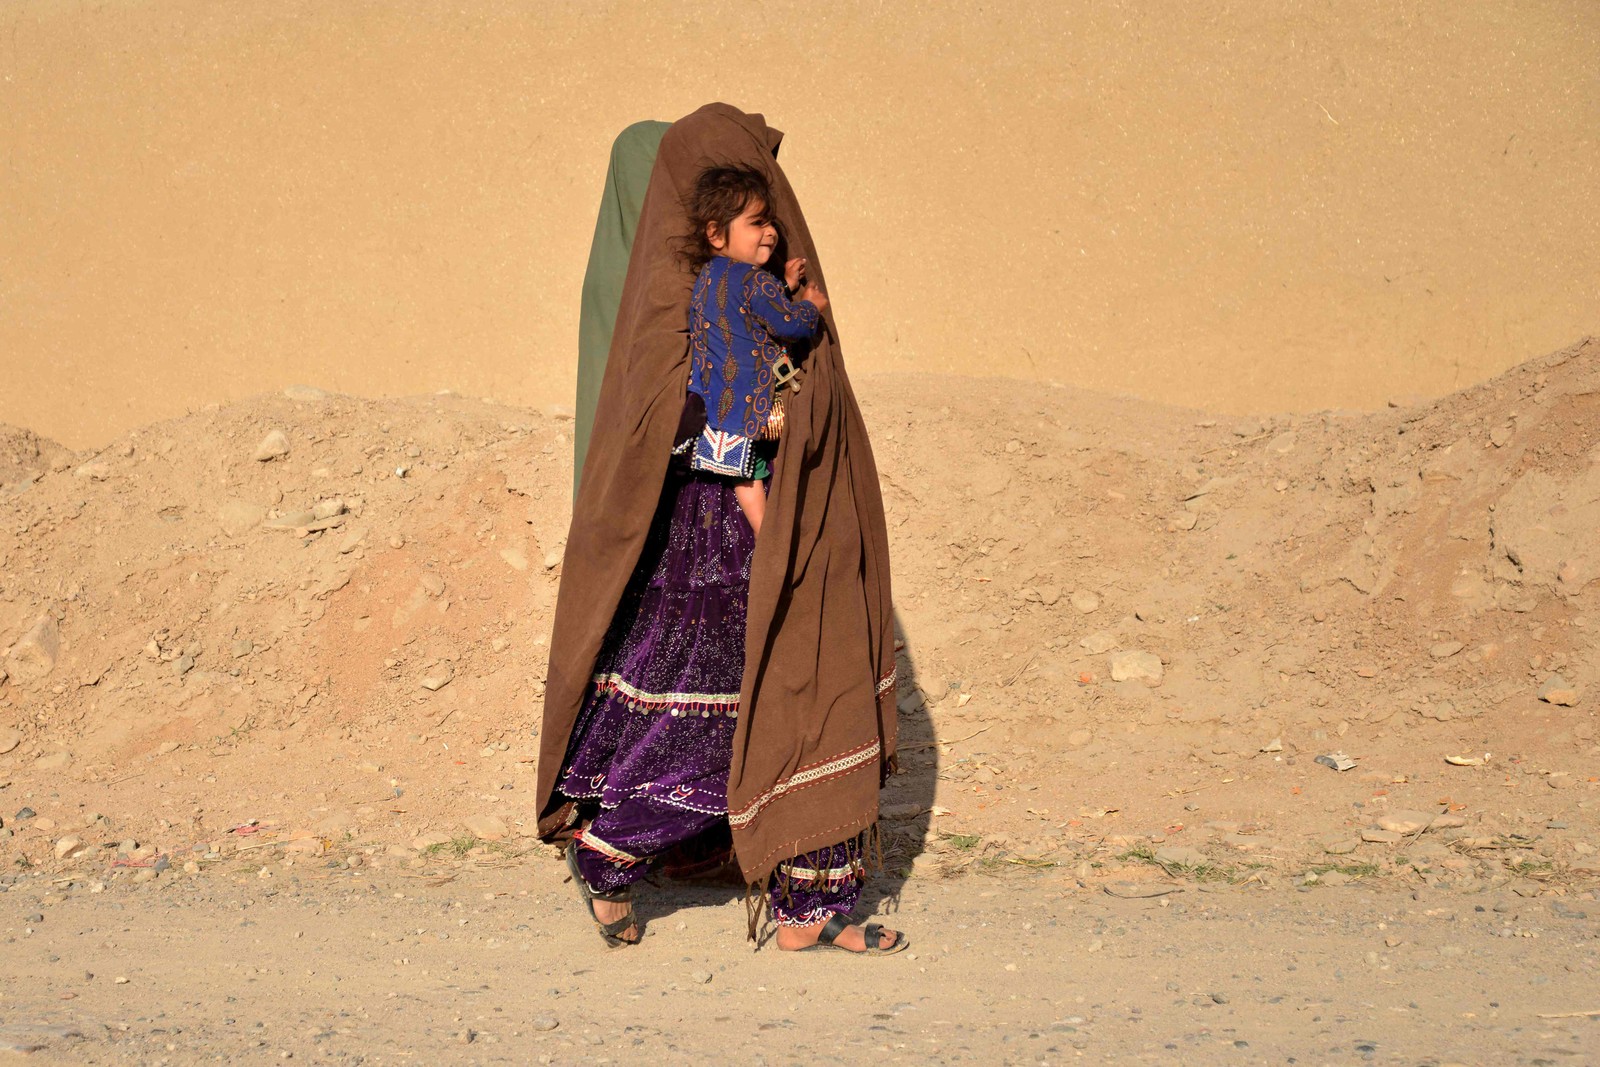 Mulher carrega criança ao longo de uma estrada no distrito de Zhari, na província de Kandahar, Afeganistão — Foto: SANAULLAH SEIAM/AFP